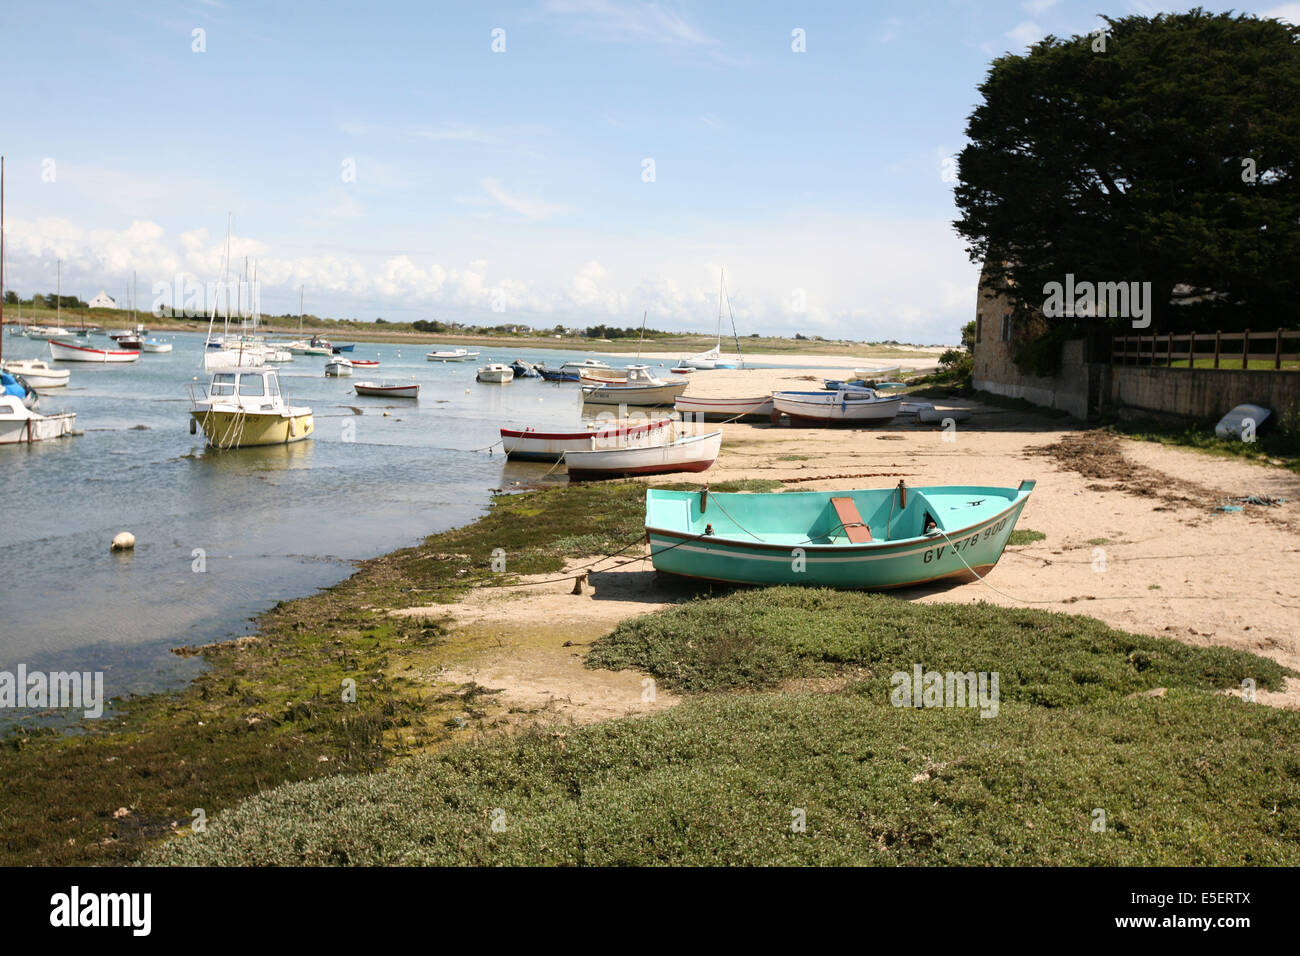 Francia, Bretagne, finistere sud, Pays bigouden, lesconil, plage, Petite bateaux, Foto Stock